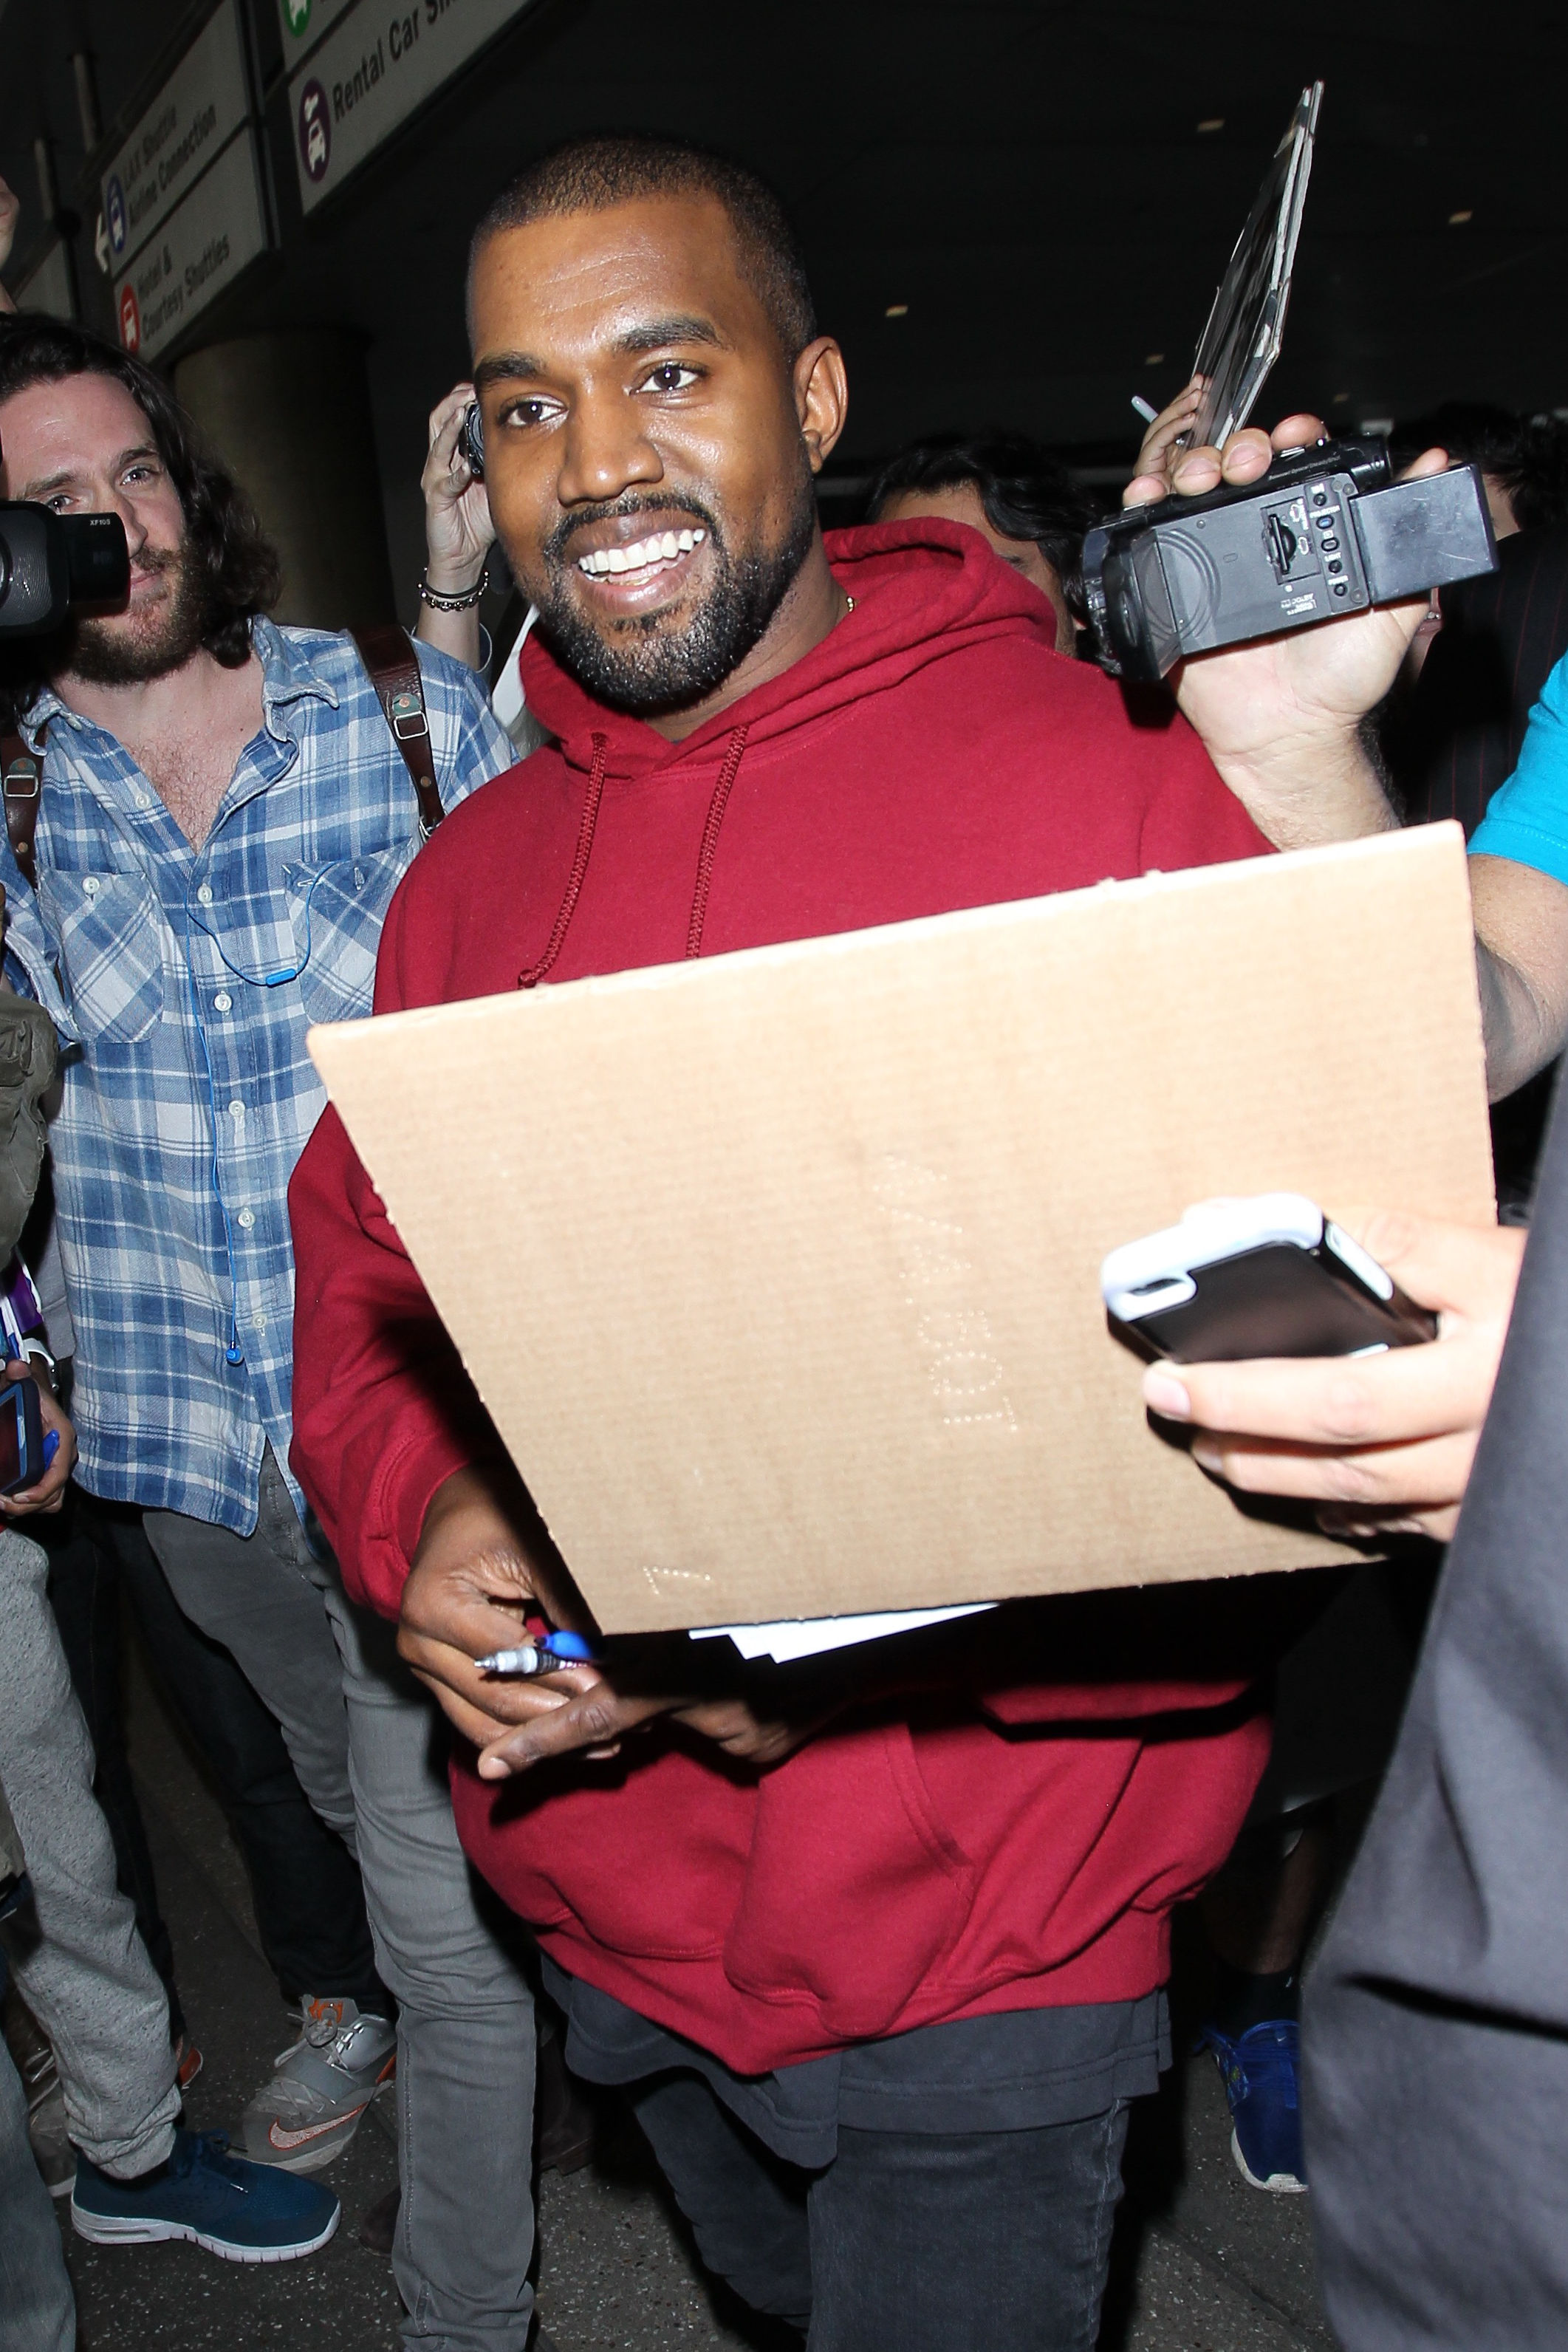 Kevin Parker Sebut Kolaborasi Dengan Kanye West di Album 'YE' Jadi Pengalaman Terbaik